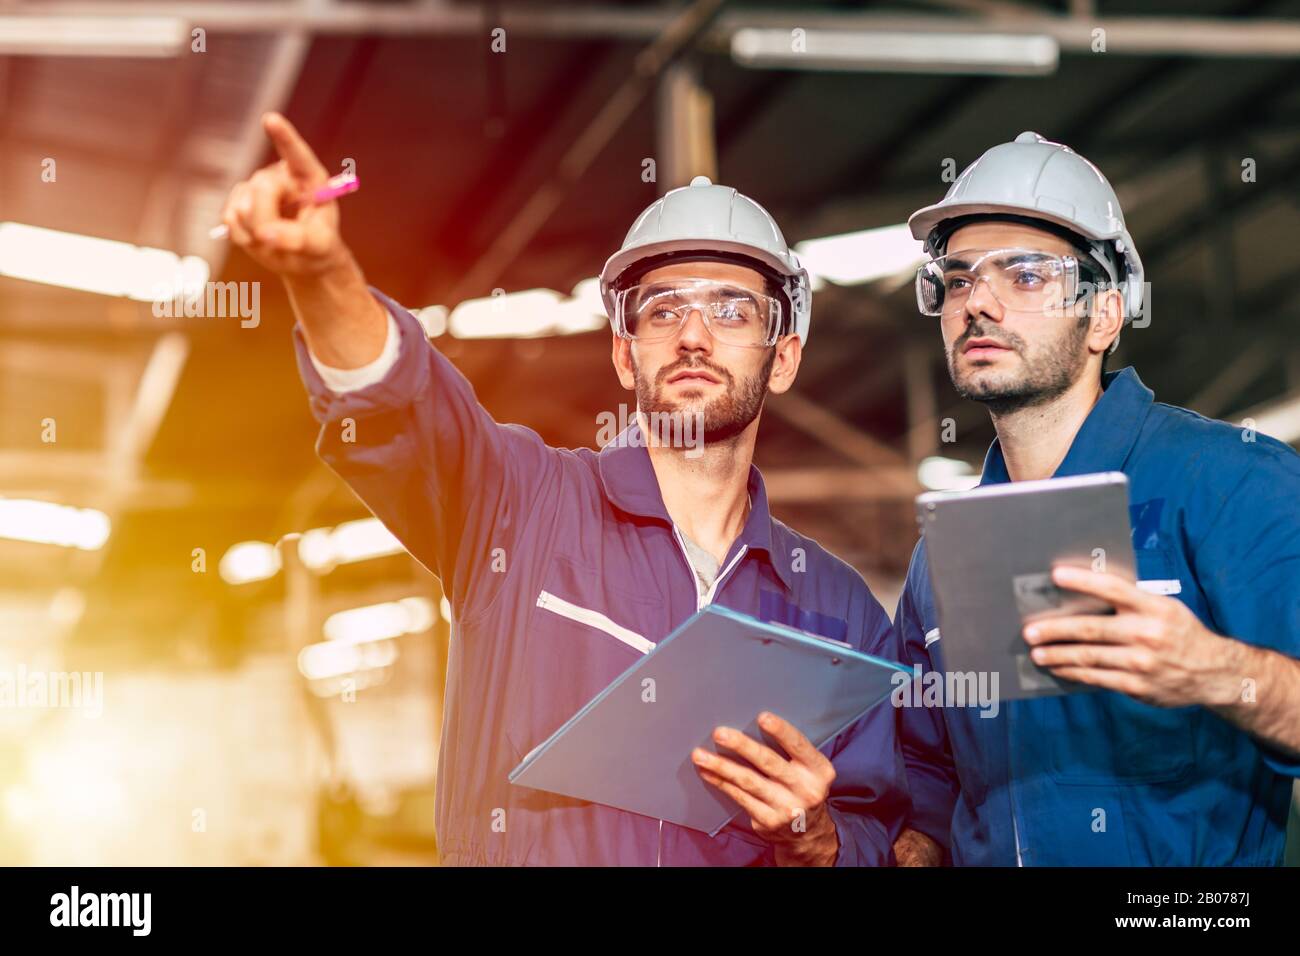 Deux ingénieurs travaillant avec un casque blanc et un casque de sécurité pour travailler dans une tablette à poignée industrielle. Banque D'Images